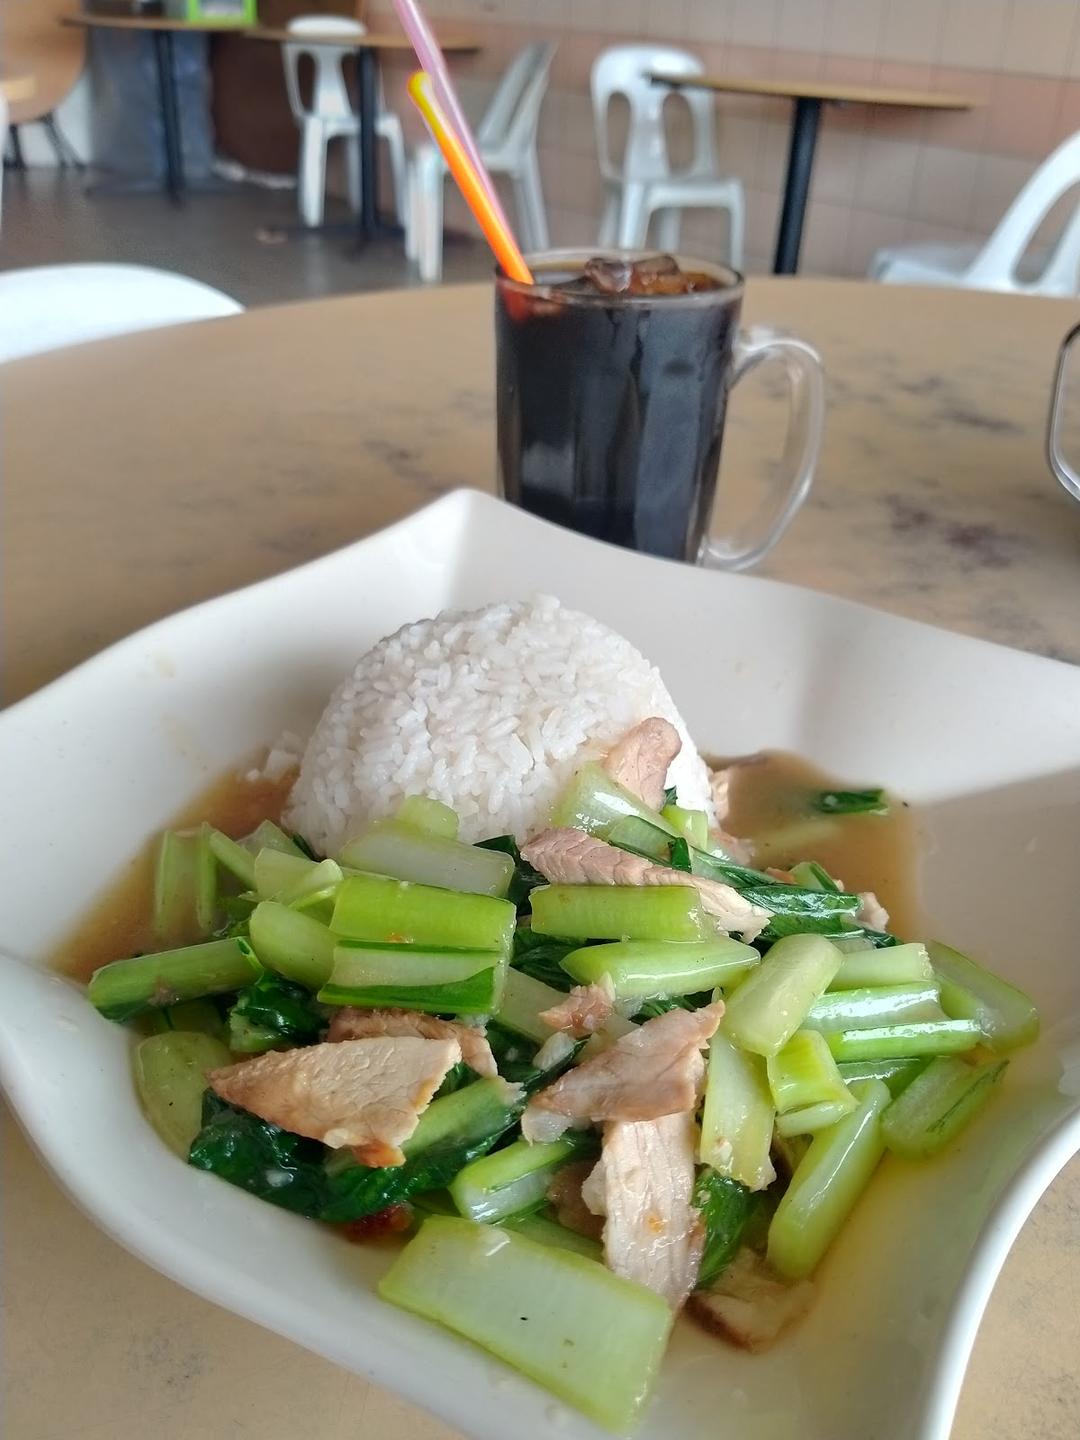 Photo of 六福 Luk Fook Restaurant - Kota Kinabalu, Sabah, Malaysia